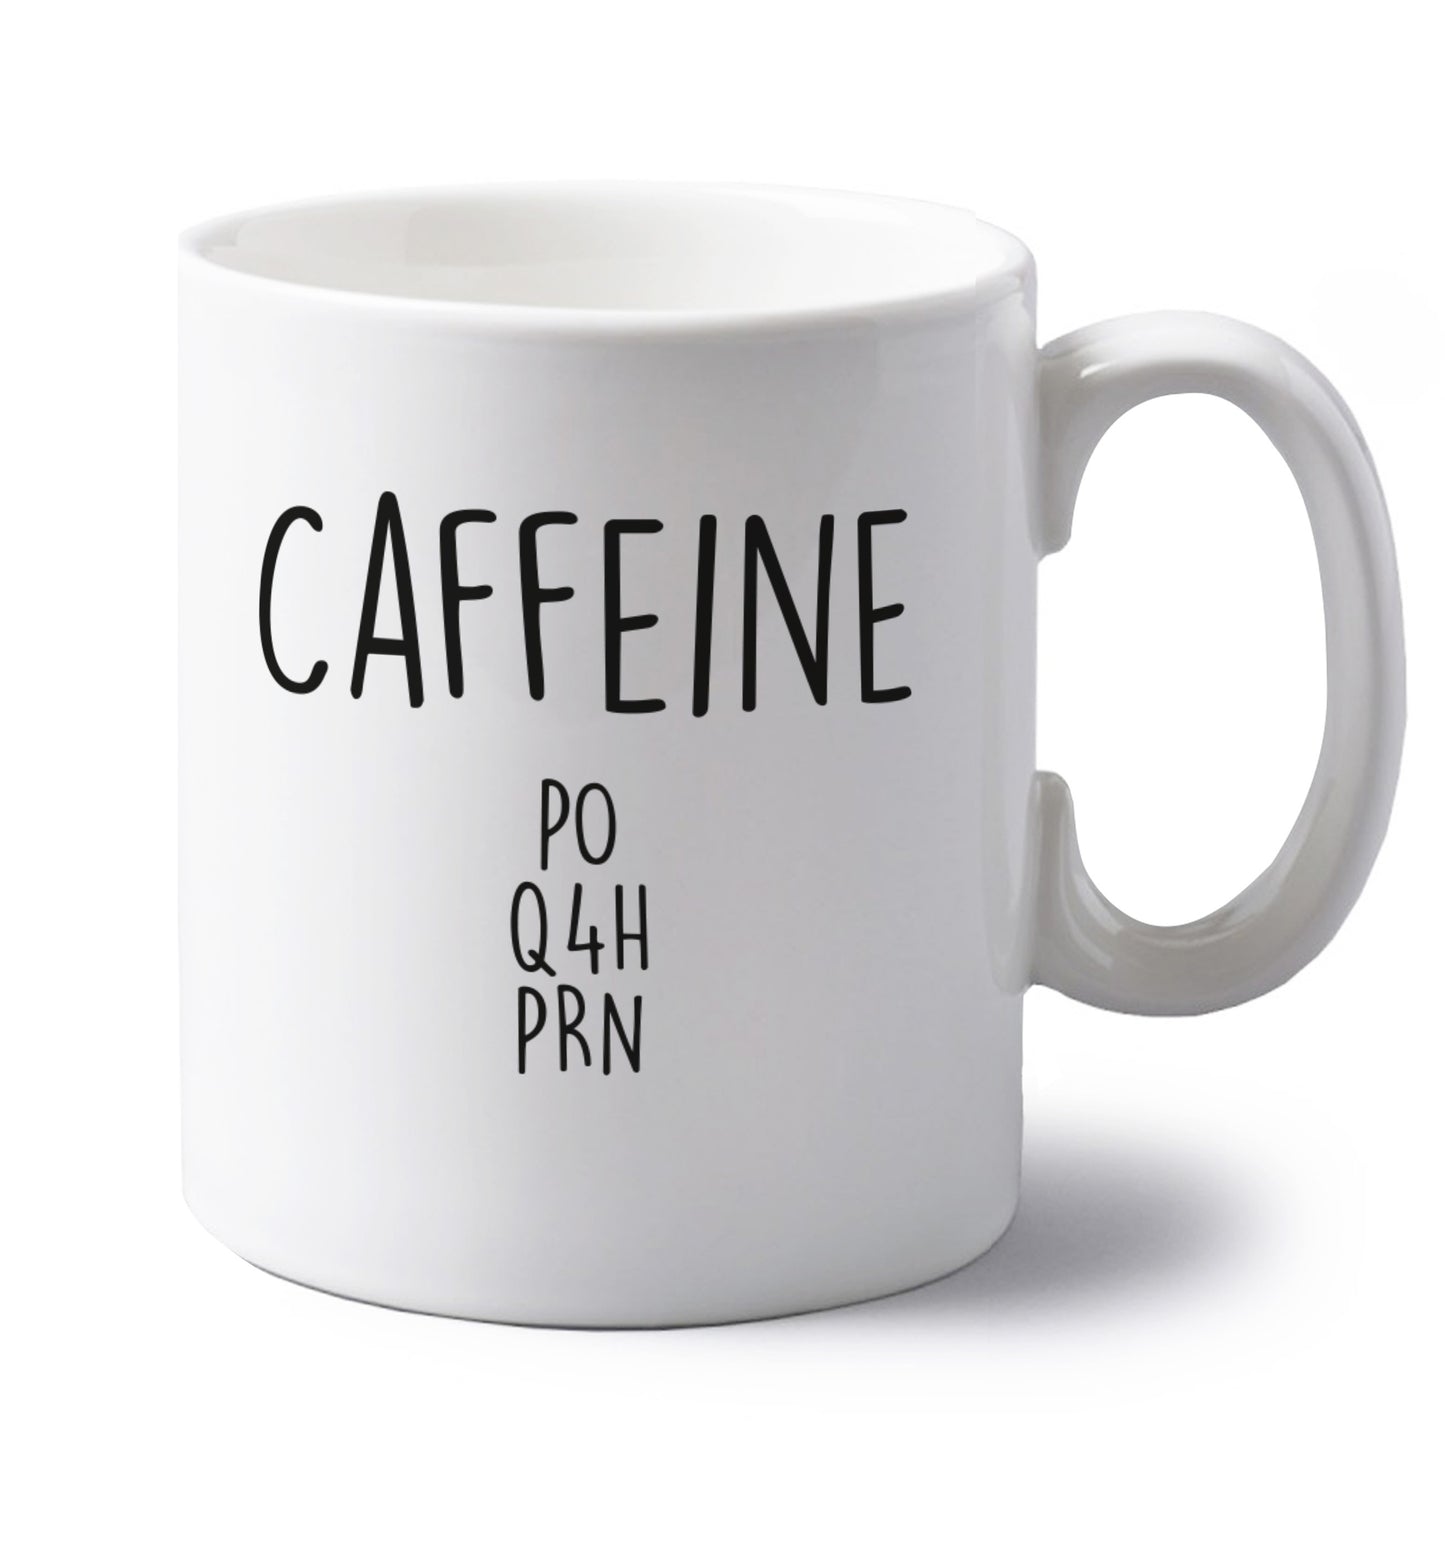 Caffeine PO Q4H PRN left handed white ceramic mug 